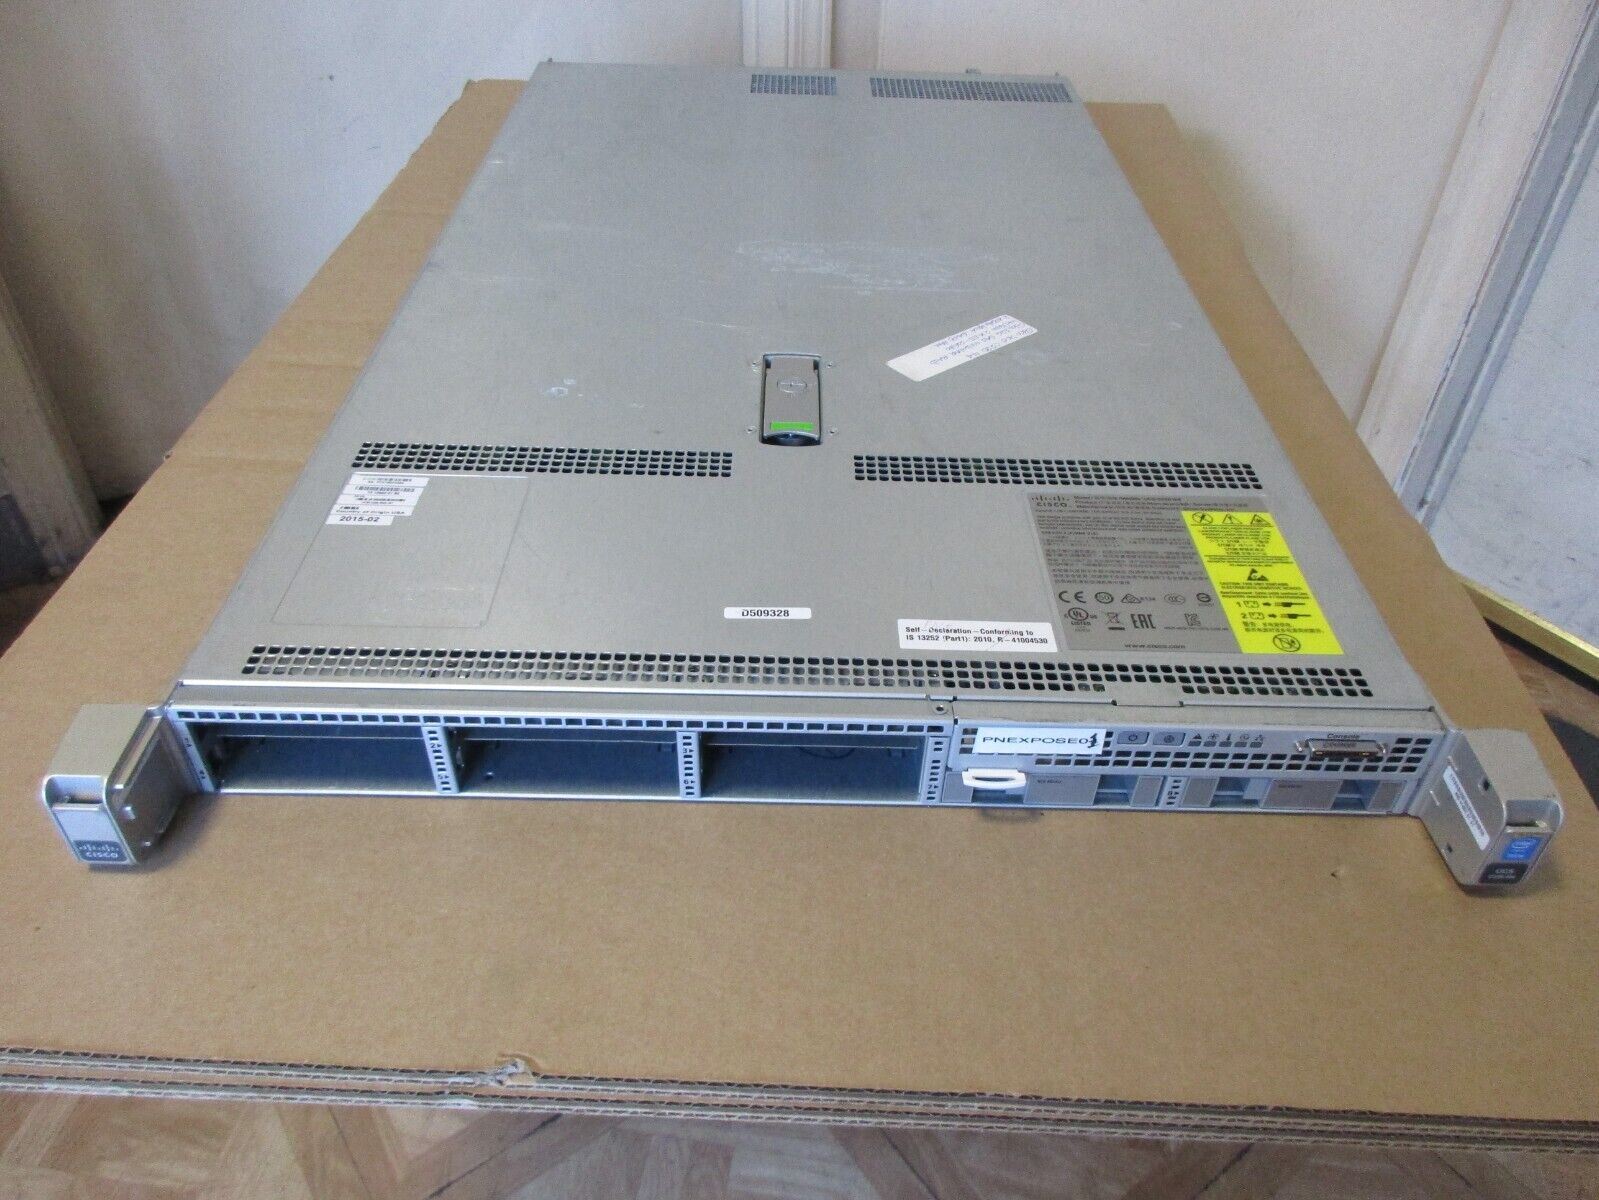 Cisco Server UCS C220 M4 Xeon 2 x E5-2630 2.40GHz 64GB 2 x PSU No HDD